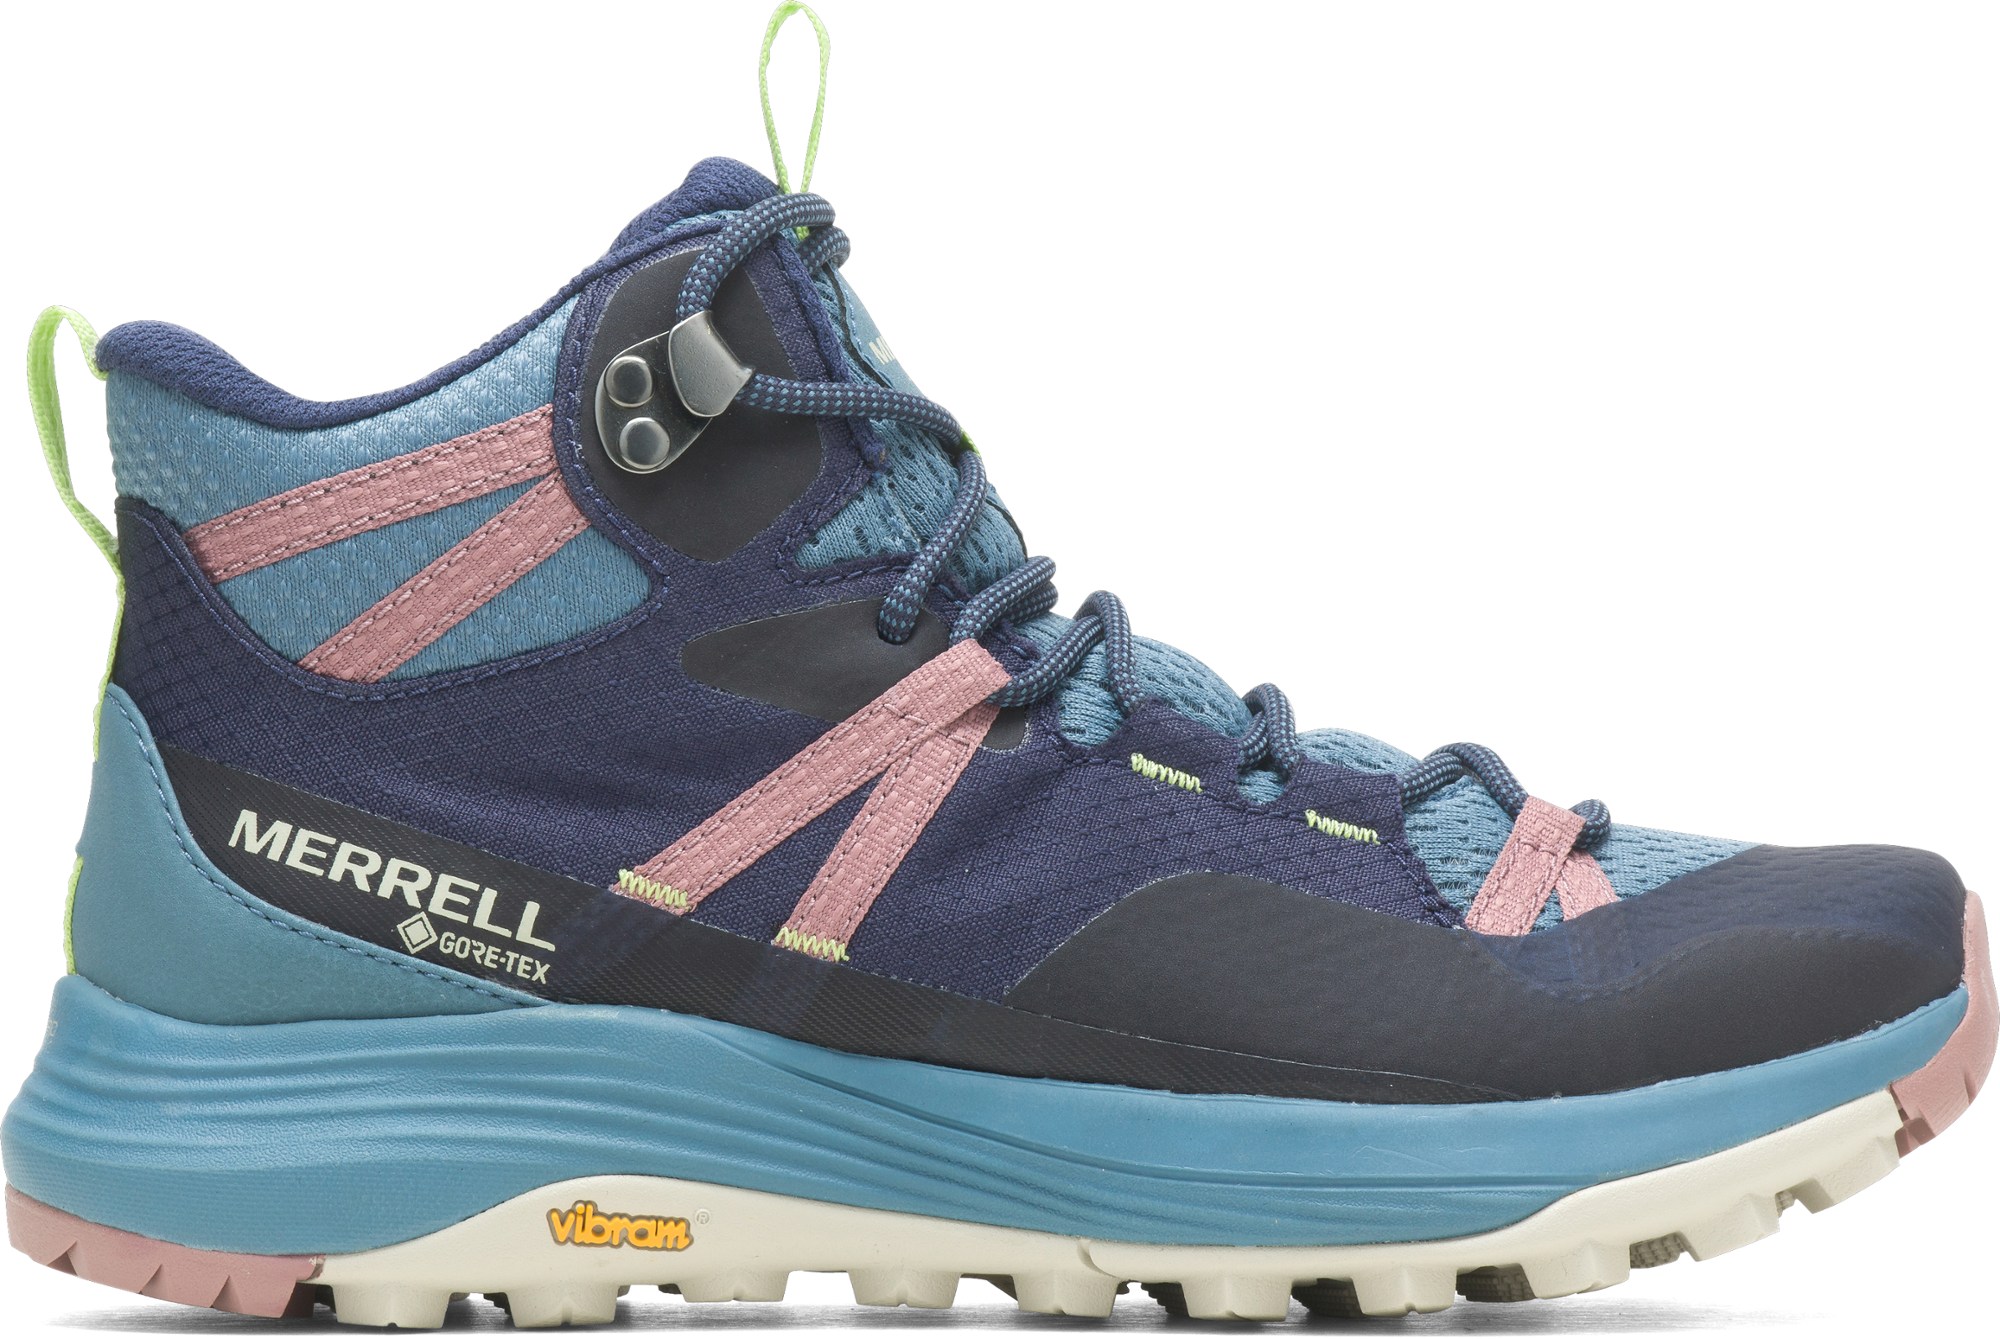 Походные ботинки Siren 4 Mid GORE-TEX — женские Merrell, синий